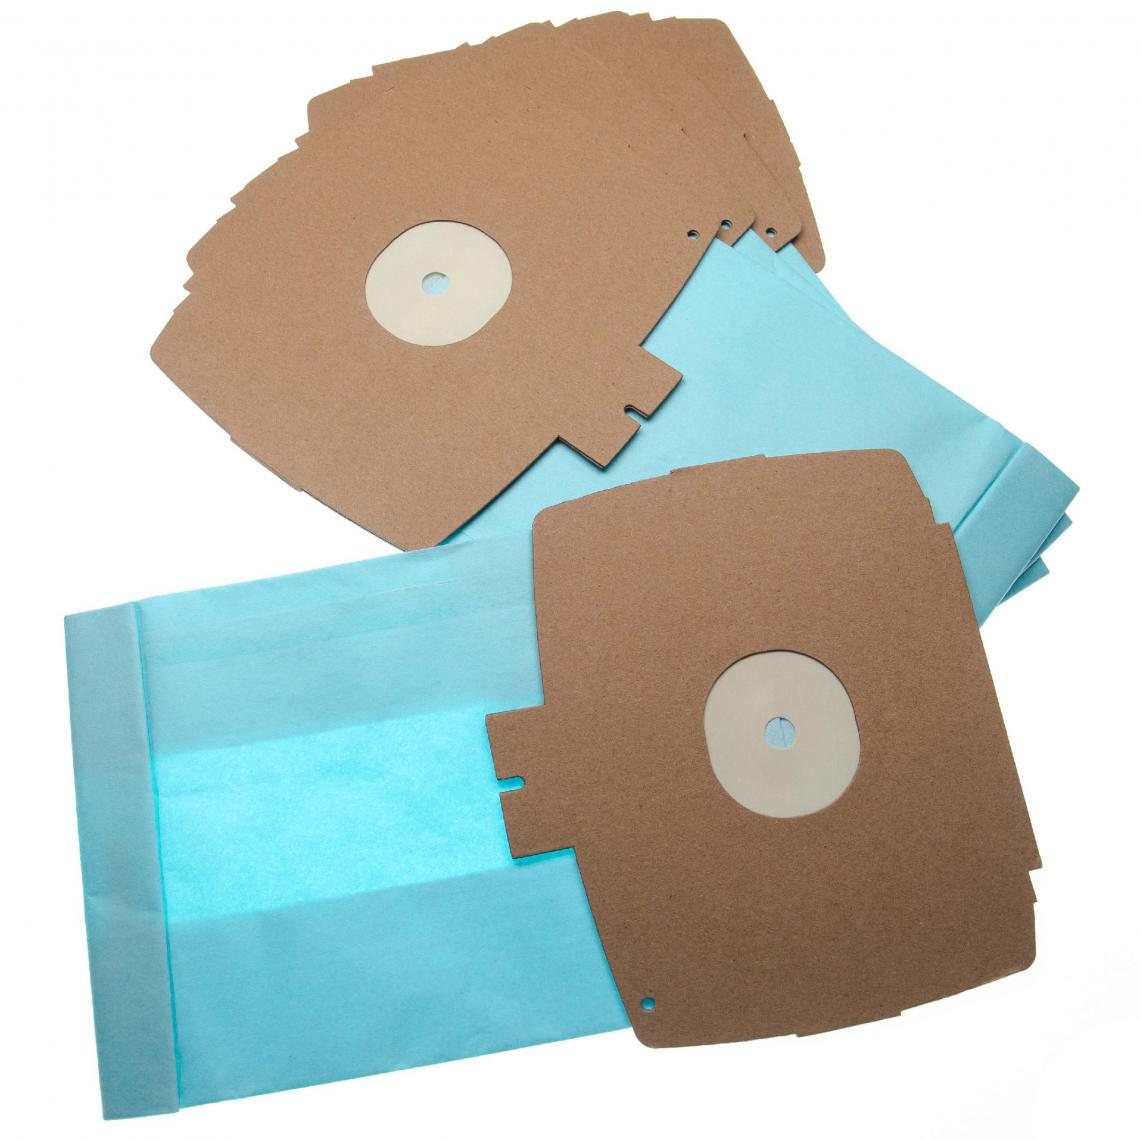 Vhbw - vhbw 10 sacs papier compatible avec Electrolux D 740, D 742, D 745, E 6, Z 355, Z 358, Z 360, Z 370, Z 375 aspirateur 26.1cm x 15.05cm - Cordons d'alimentation